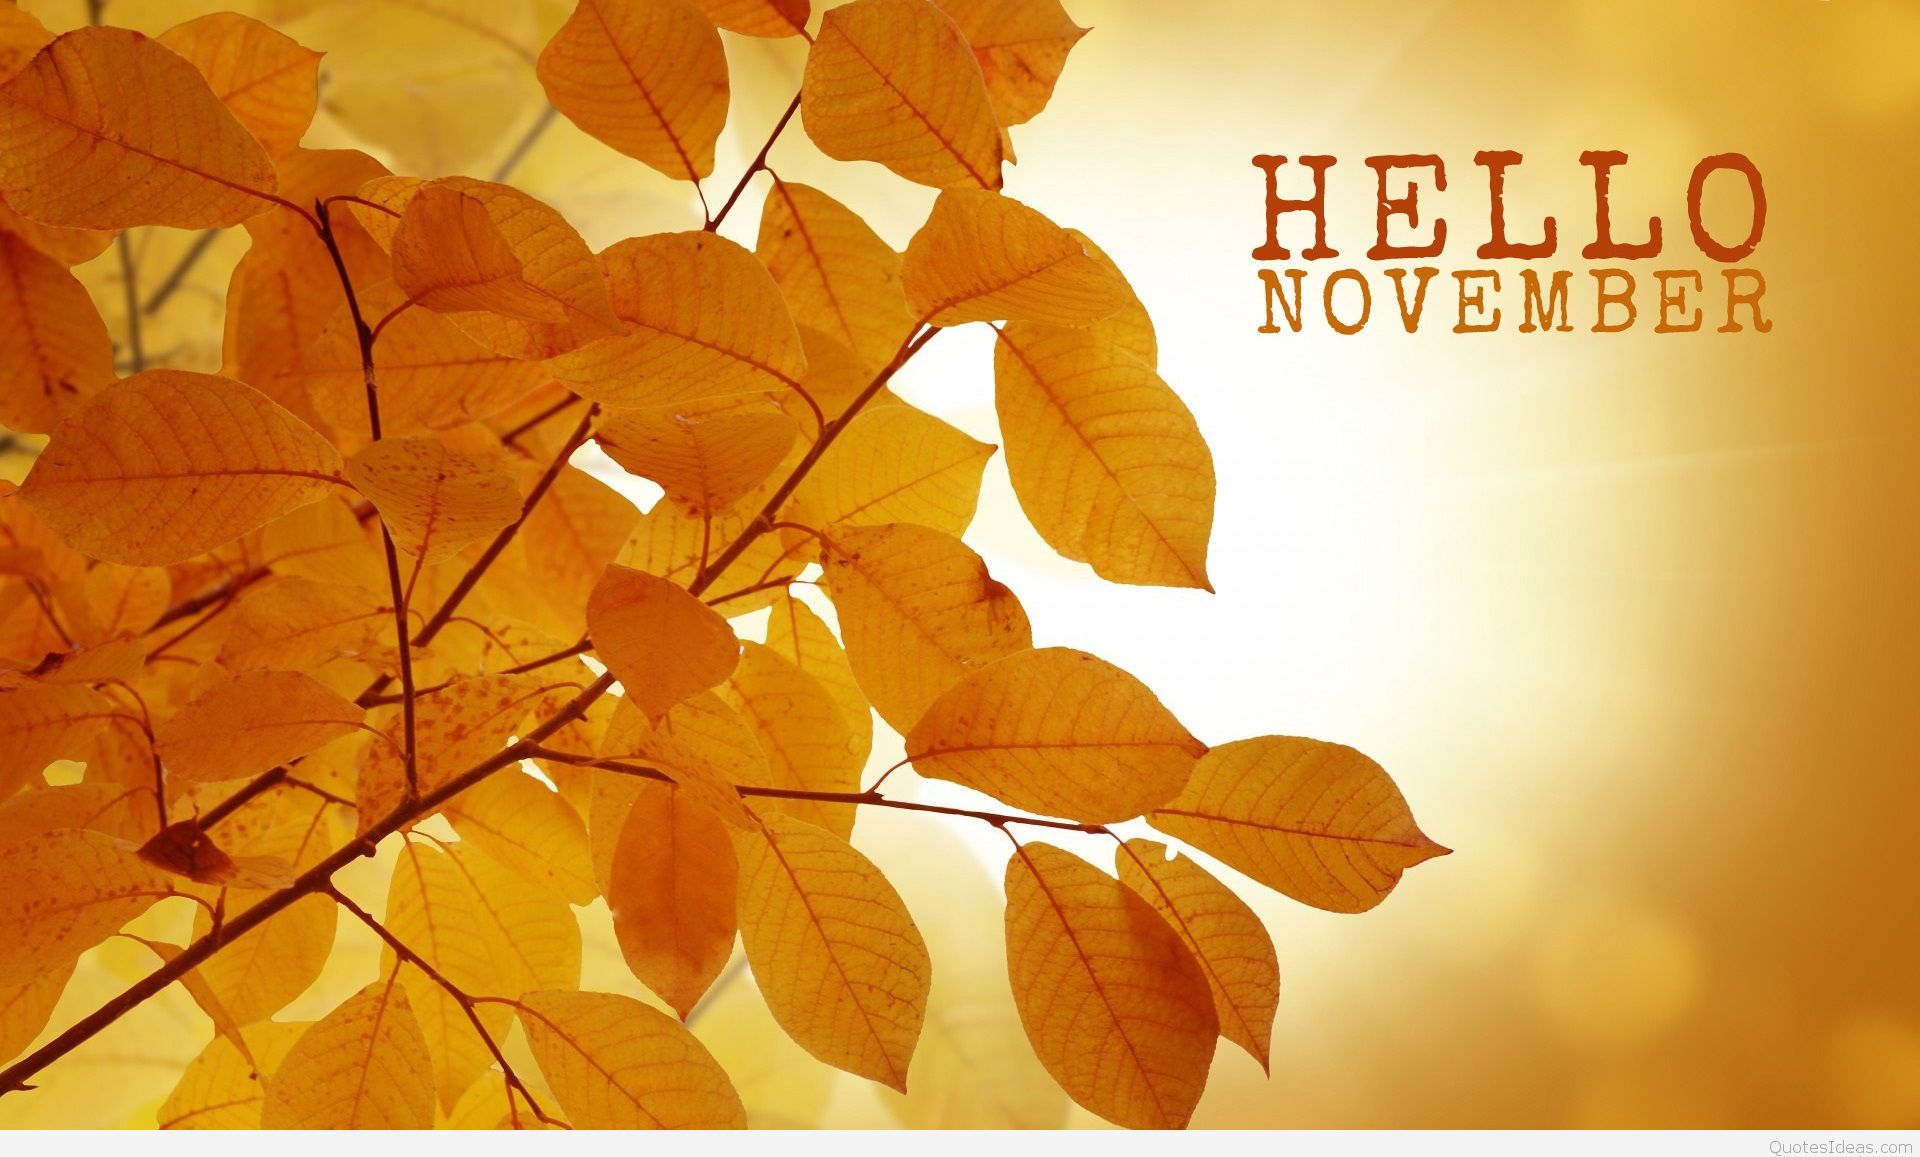 Goodbye October Hello November Wallpaper For Desktop - November Wallpaper Hd , HD Wallpaper & Backgrounds